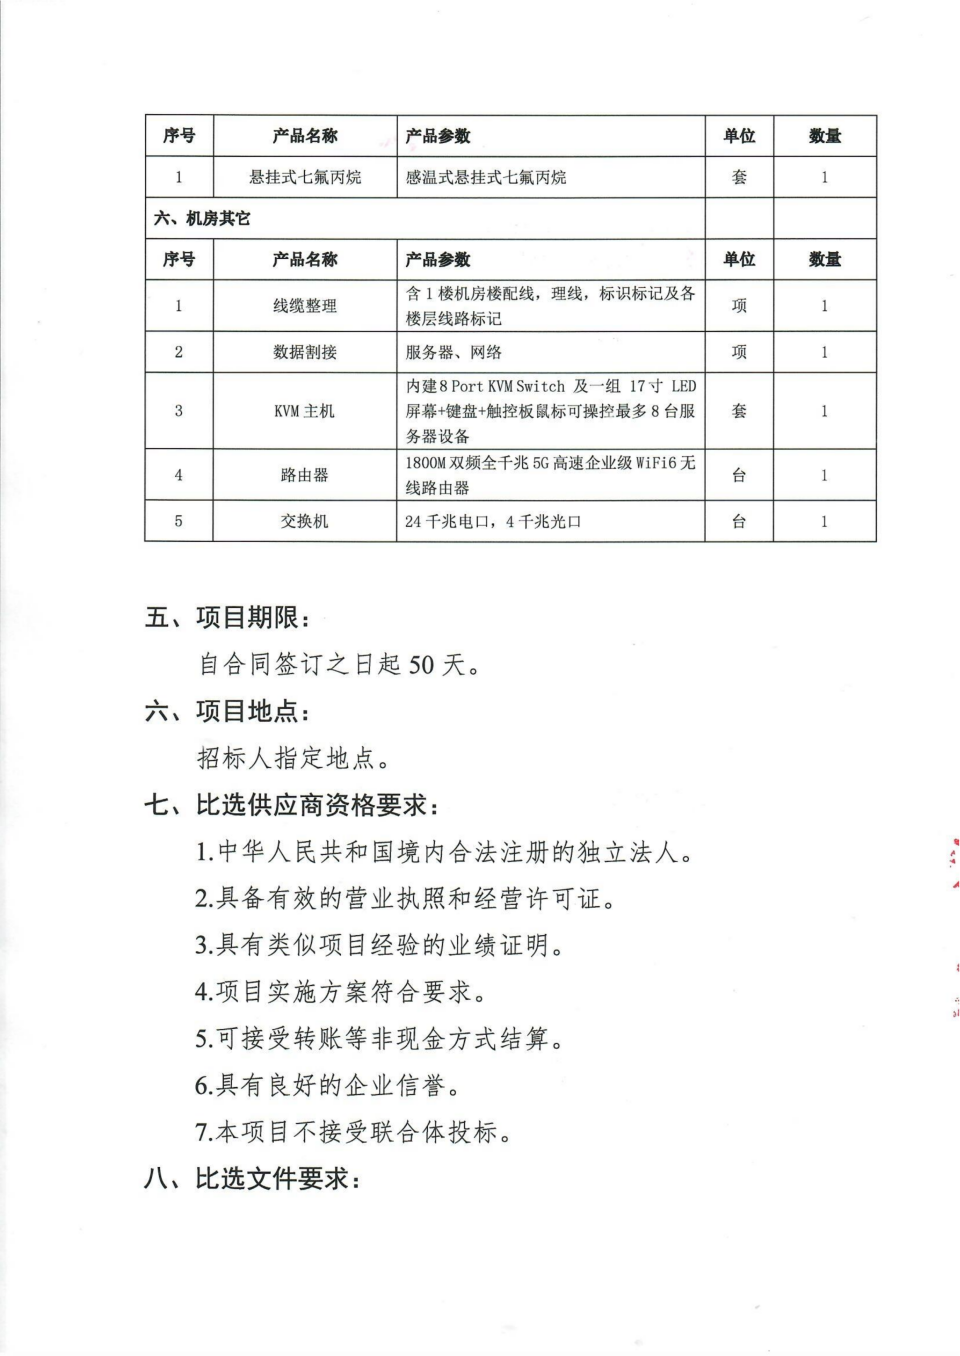 四川省文物考古研究院机房改造项目比选公告_05.png